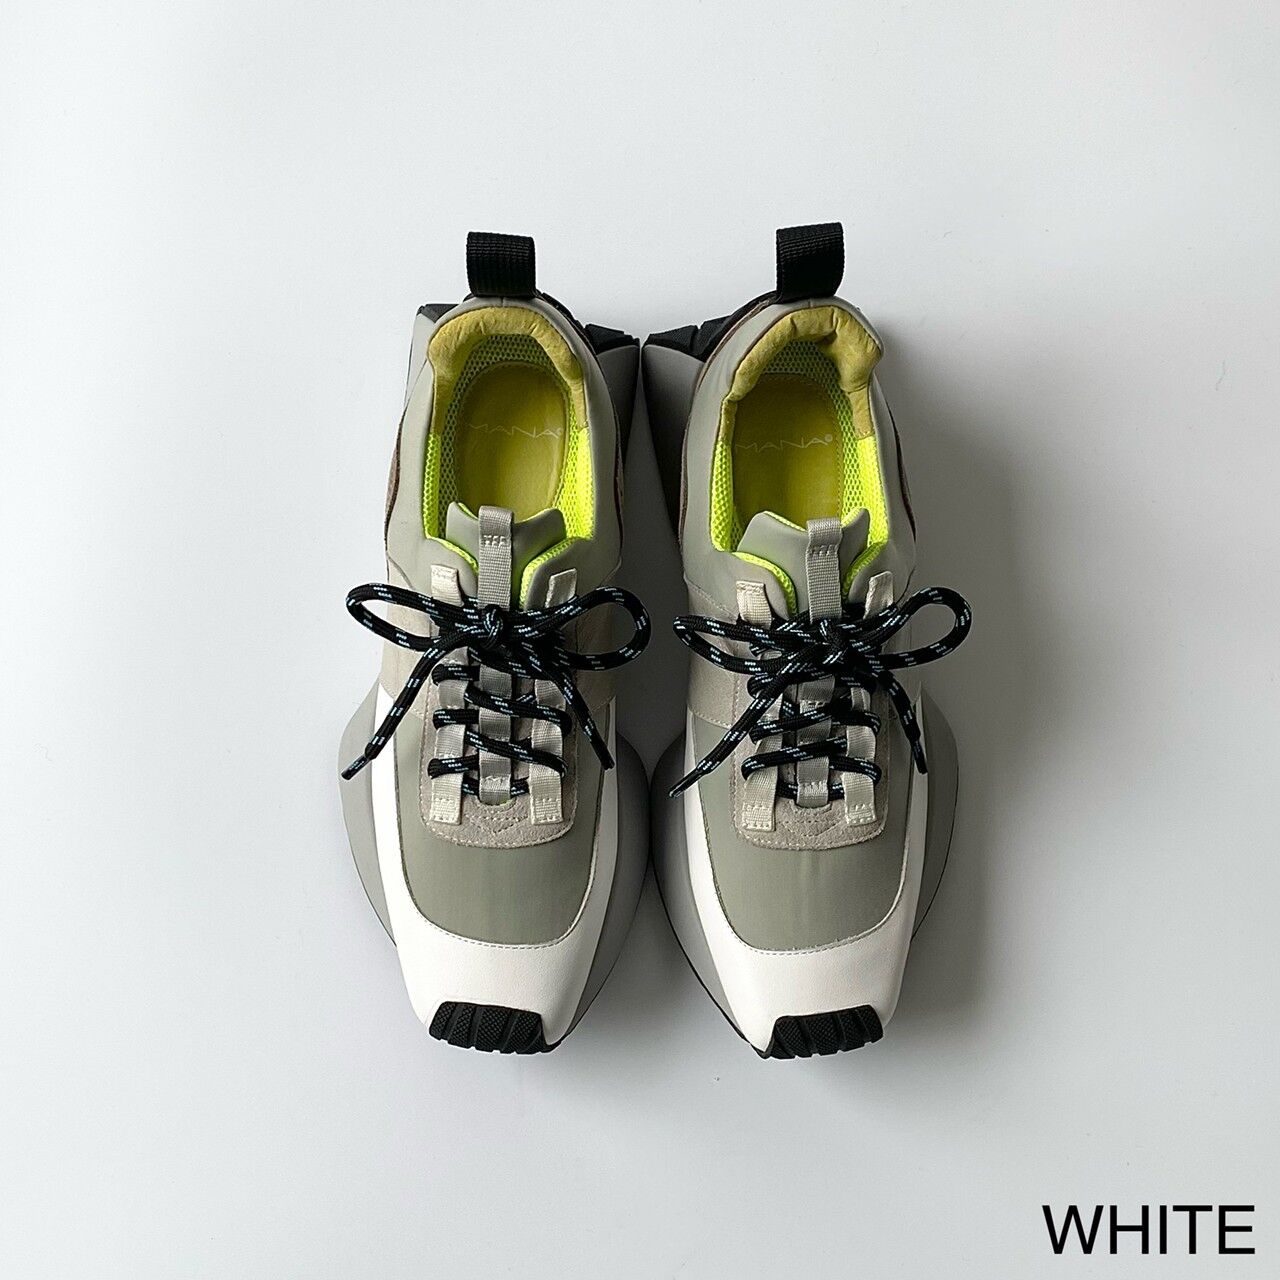 WHITE / 35 (22.5cm)